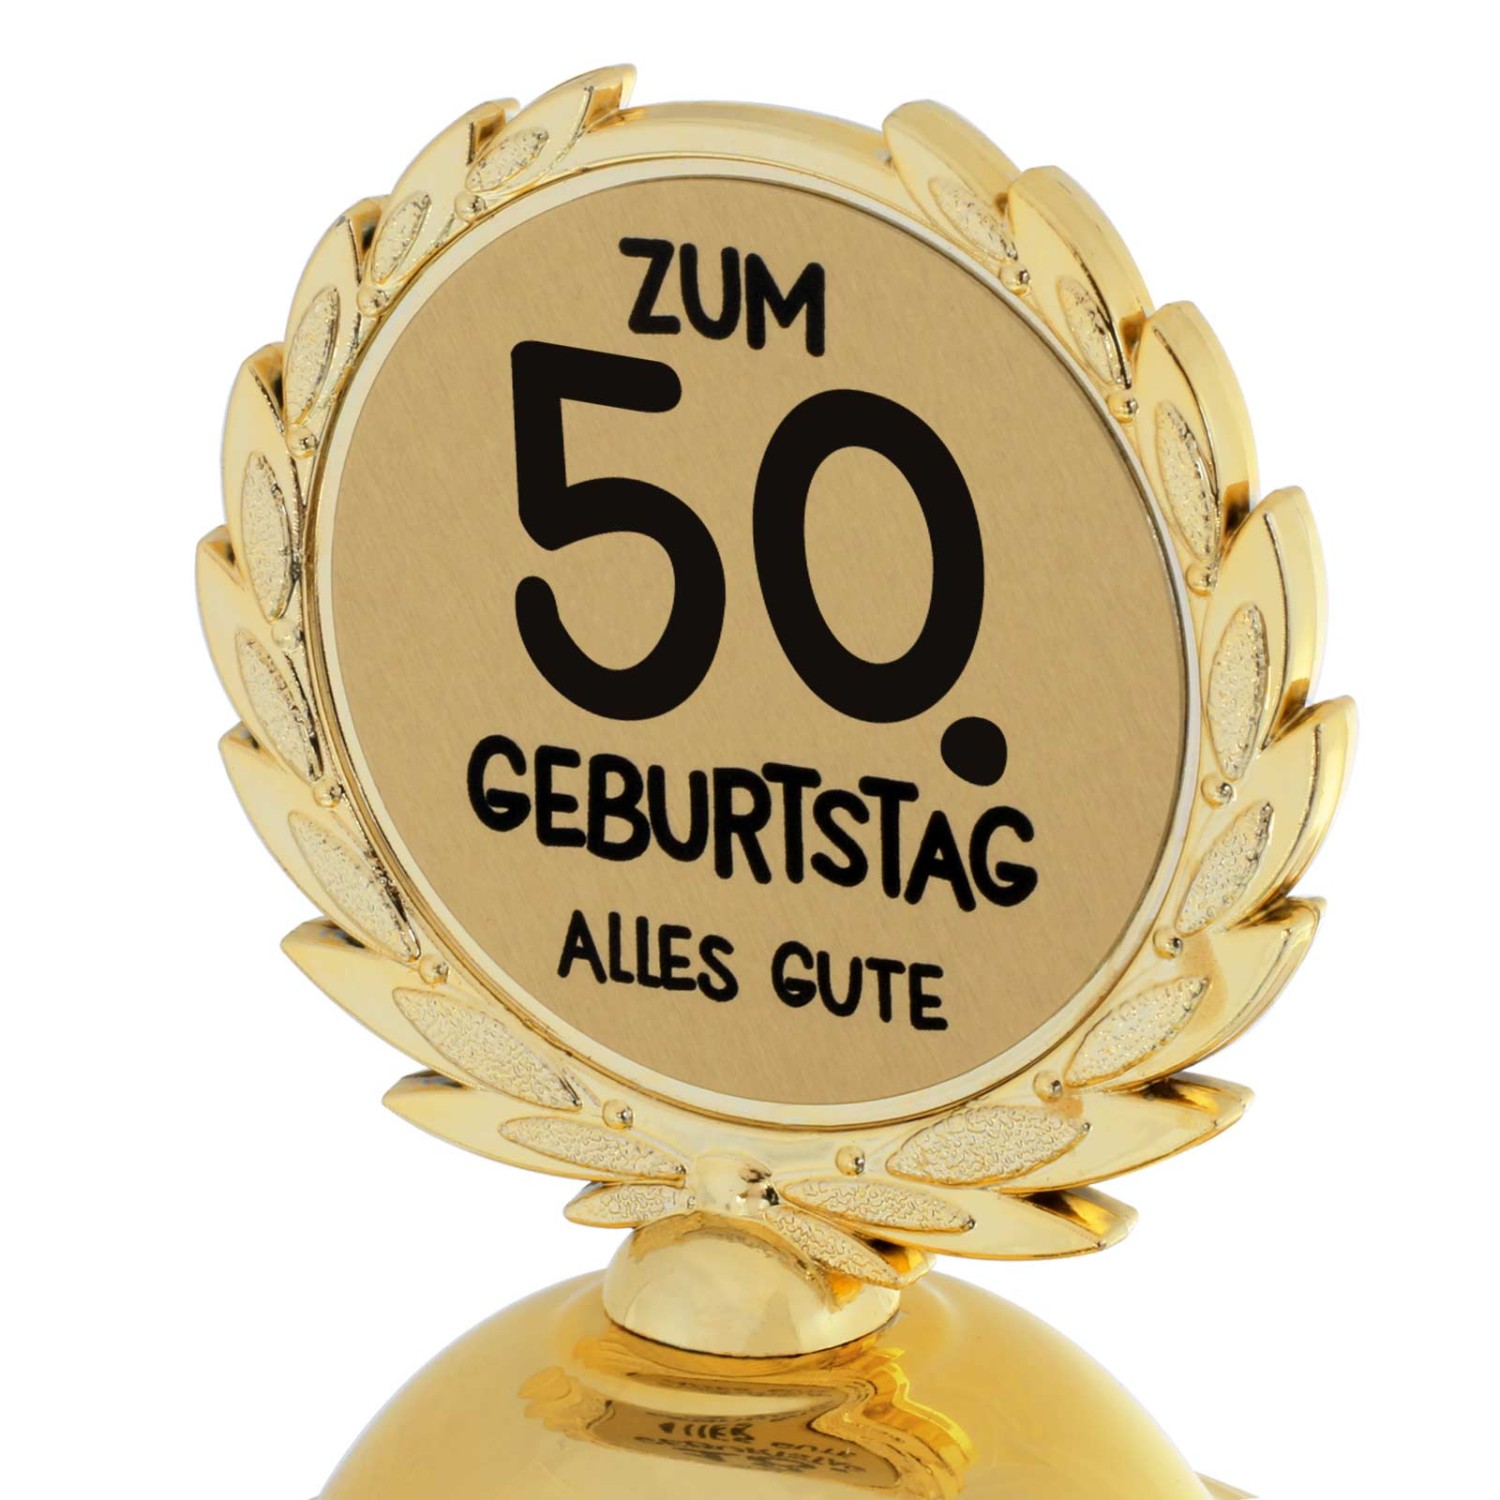 1. Foto Pokal 50. Geburtstag Geschenk 31cm groß (Jahreszahl Geburtstag: 50)